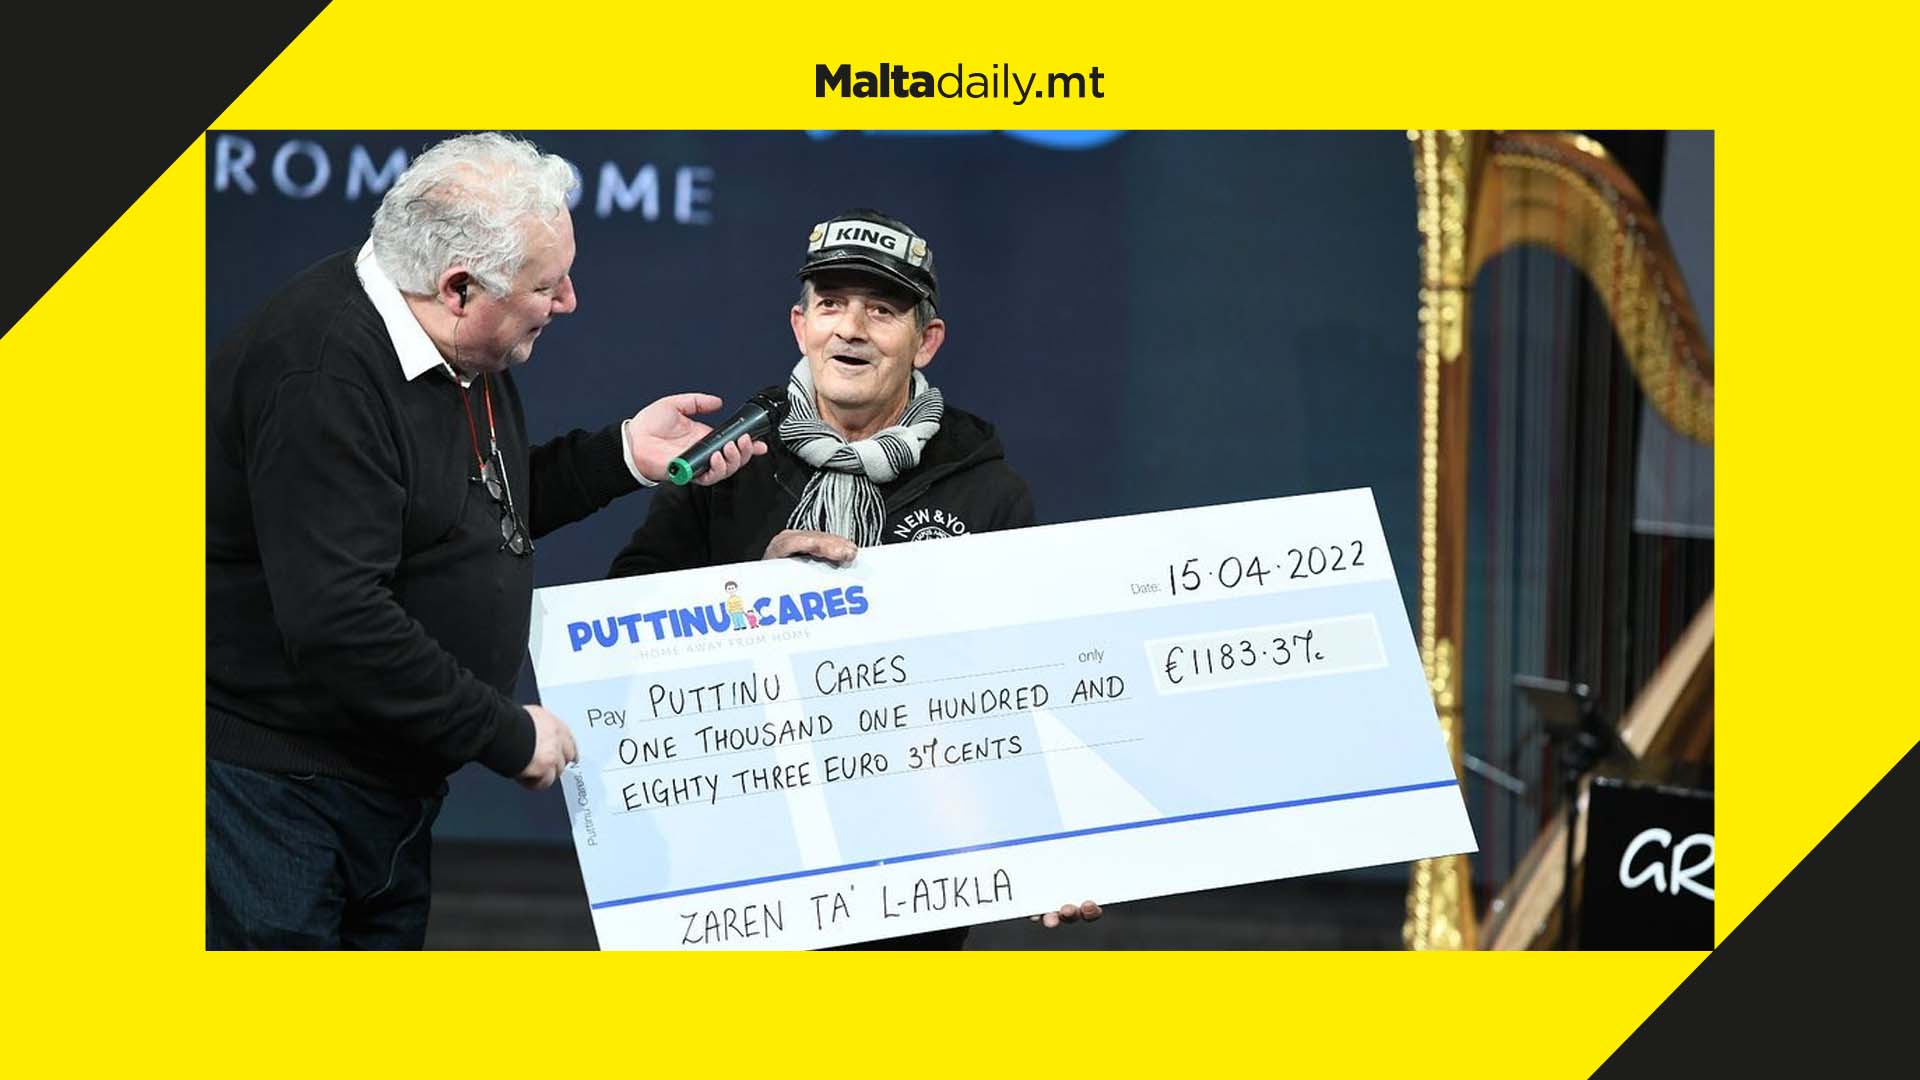 Żaren tal-Ajkla keeps his promise and donates €1183.37 to Puttinu Cares fundraiser